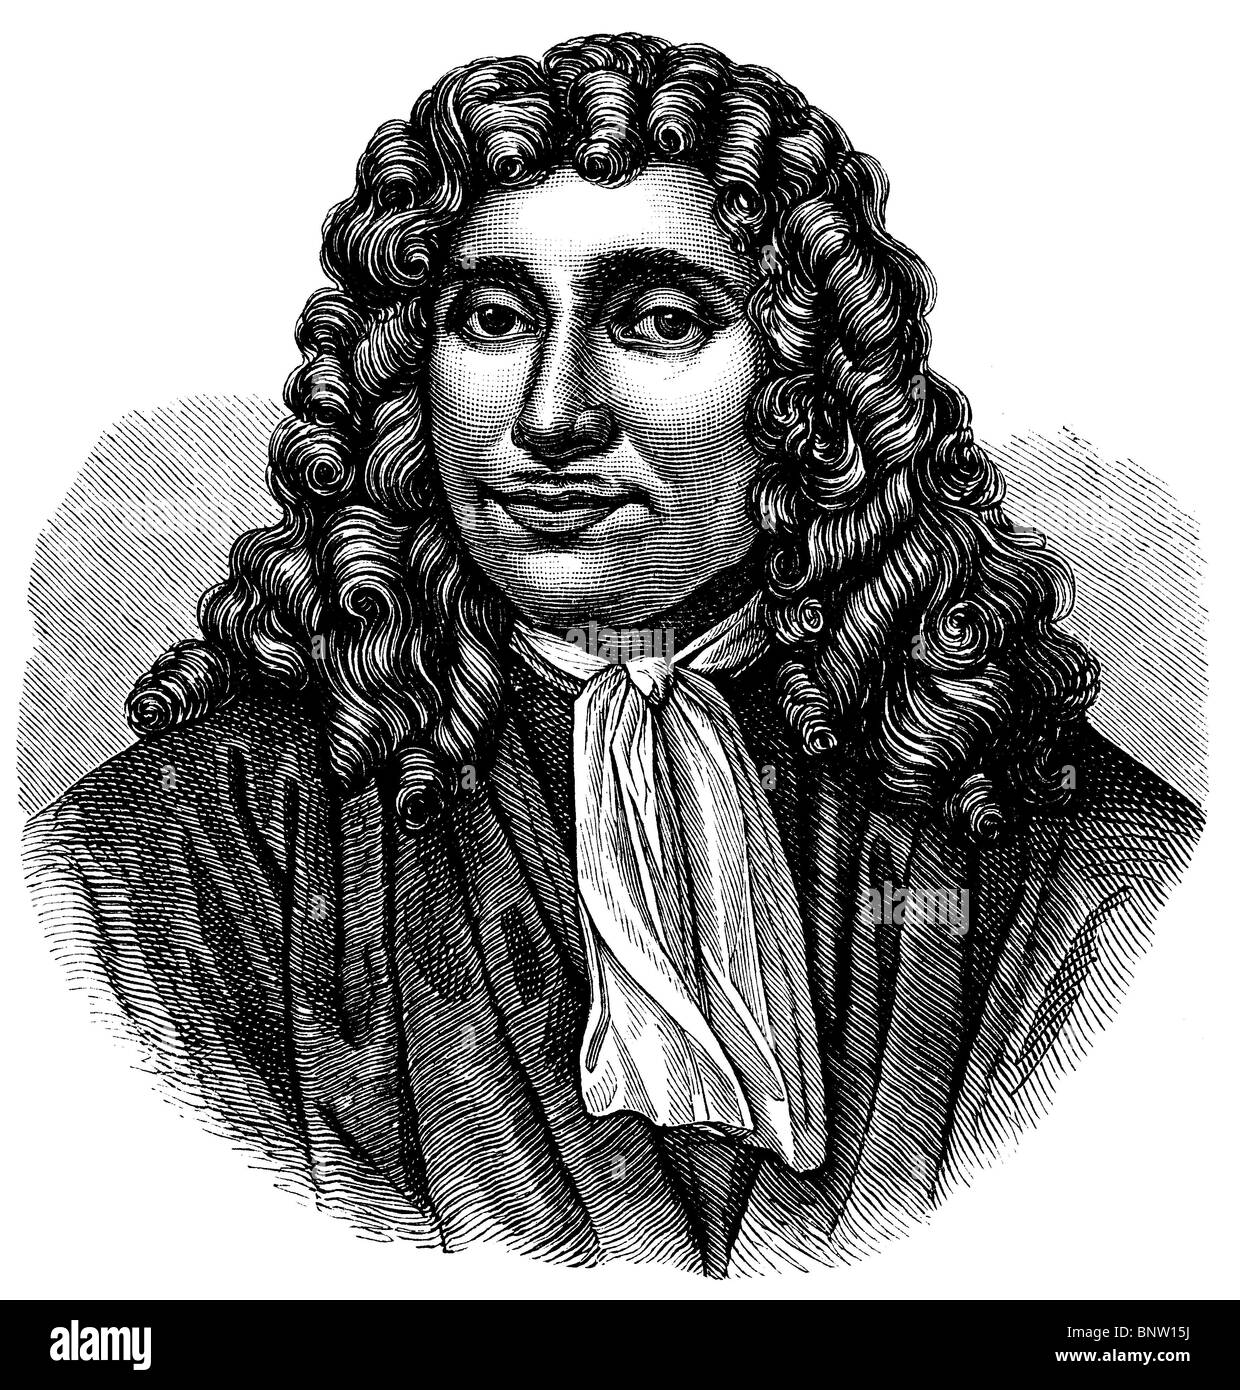 Antonie van Leeuwenhoek [1632 - 1723), Dutch tradesman and ...